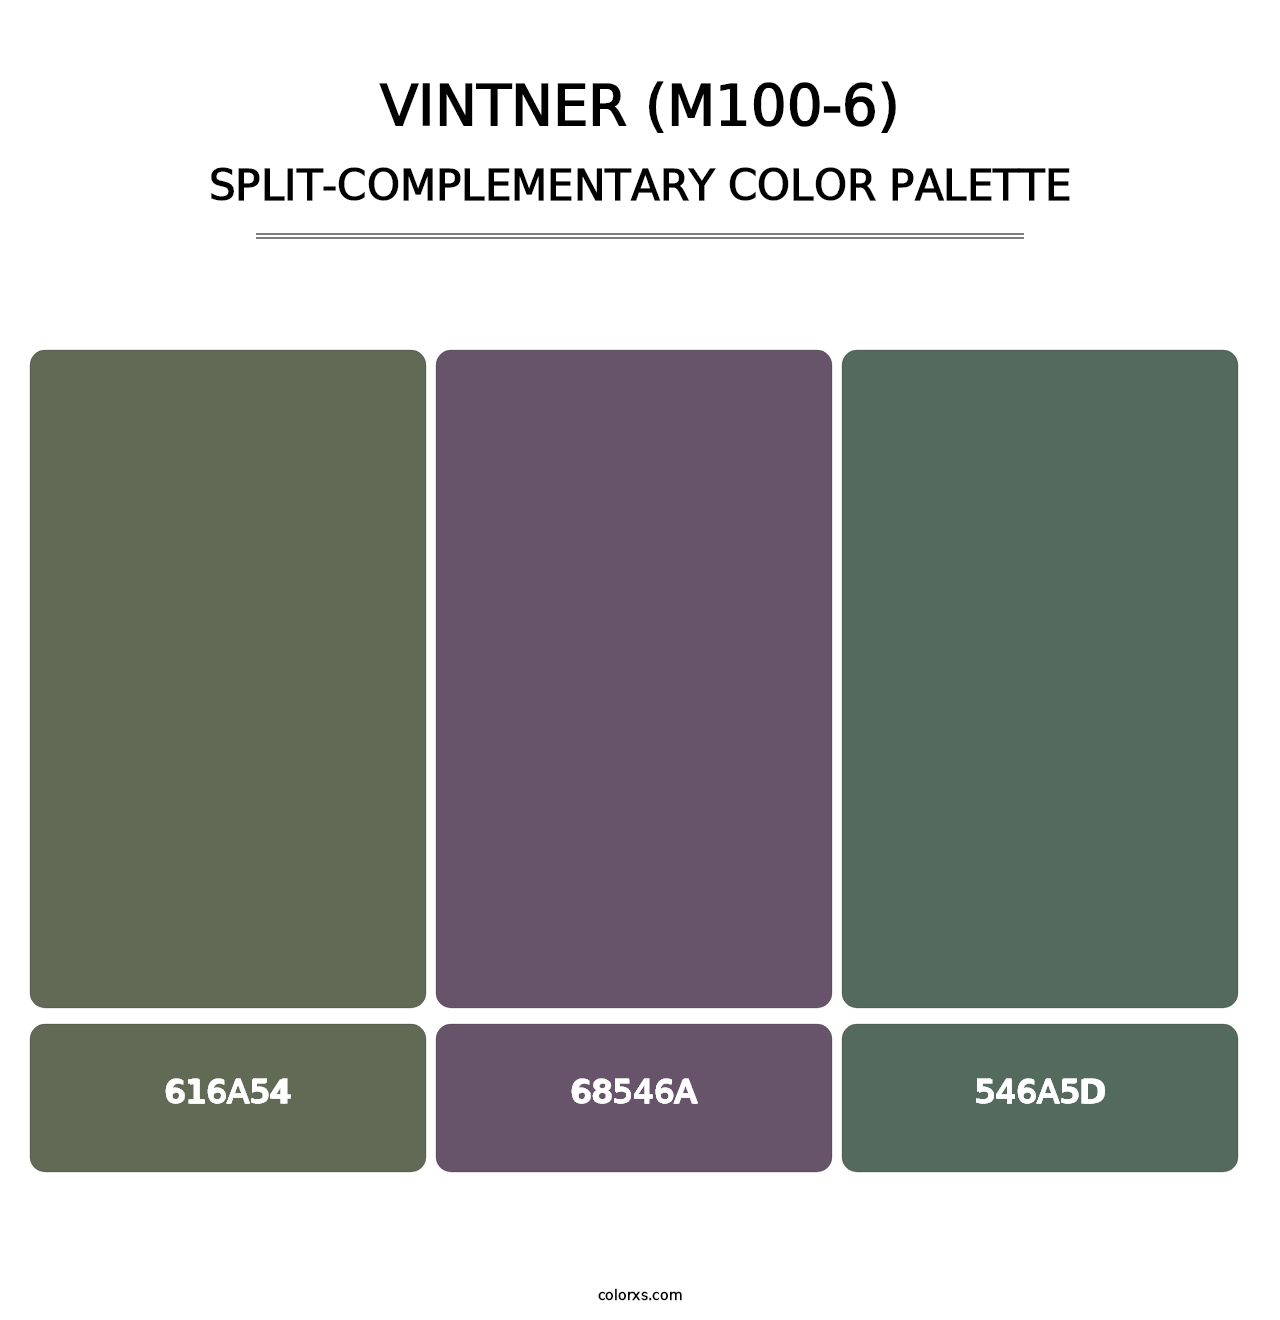 Vintner (M100-6) - Split-Complementary Color Palette